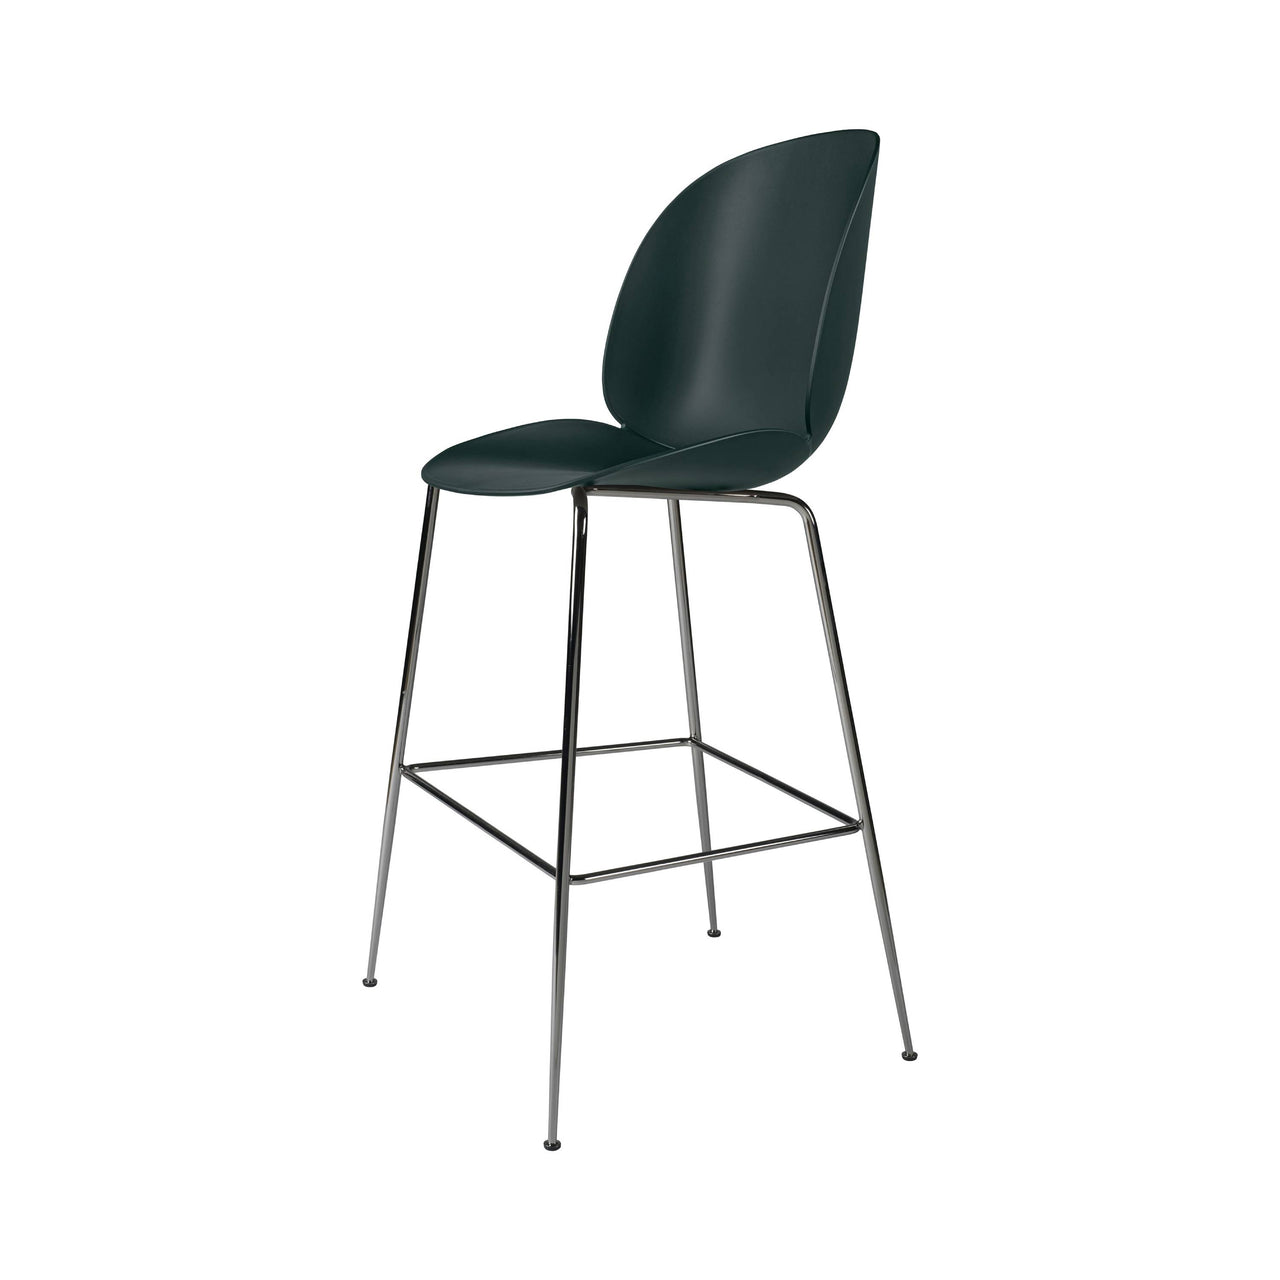 Beetle Bar + Counter Chair: Felt Glides + Bar + Dark Green + Black Chrome